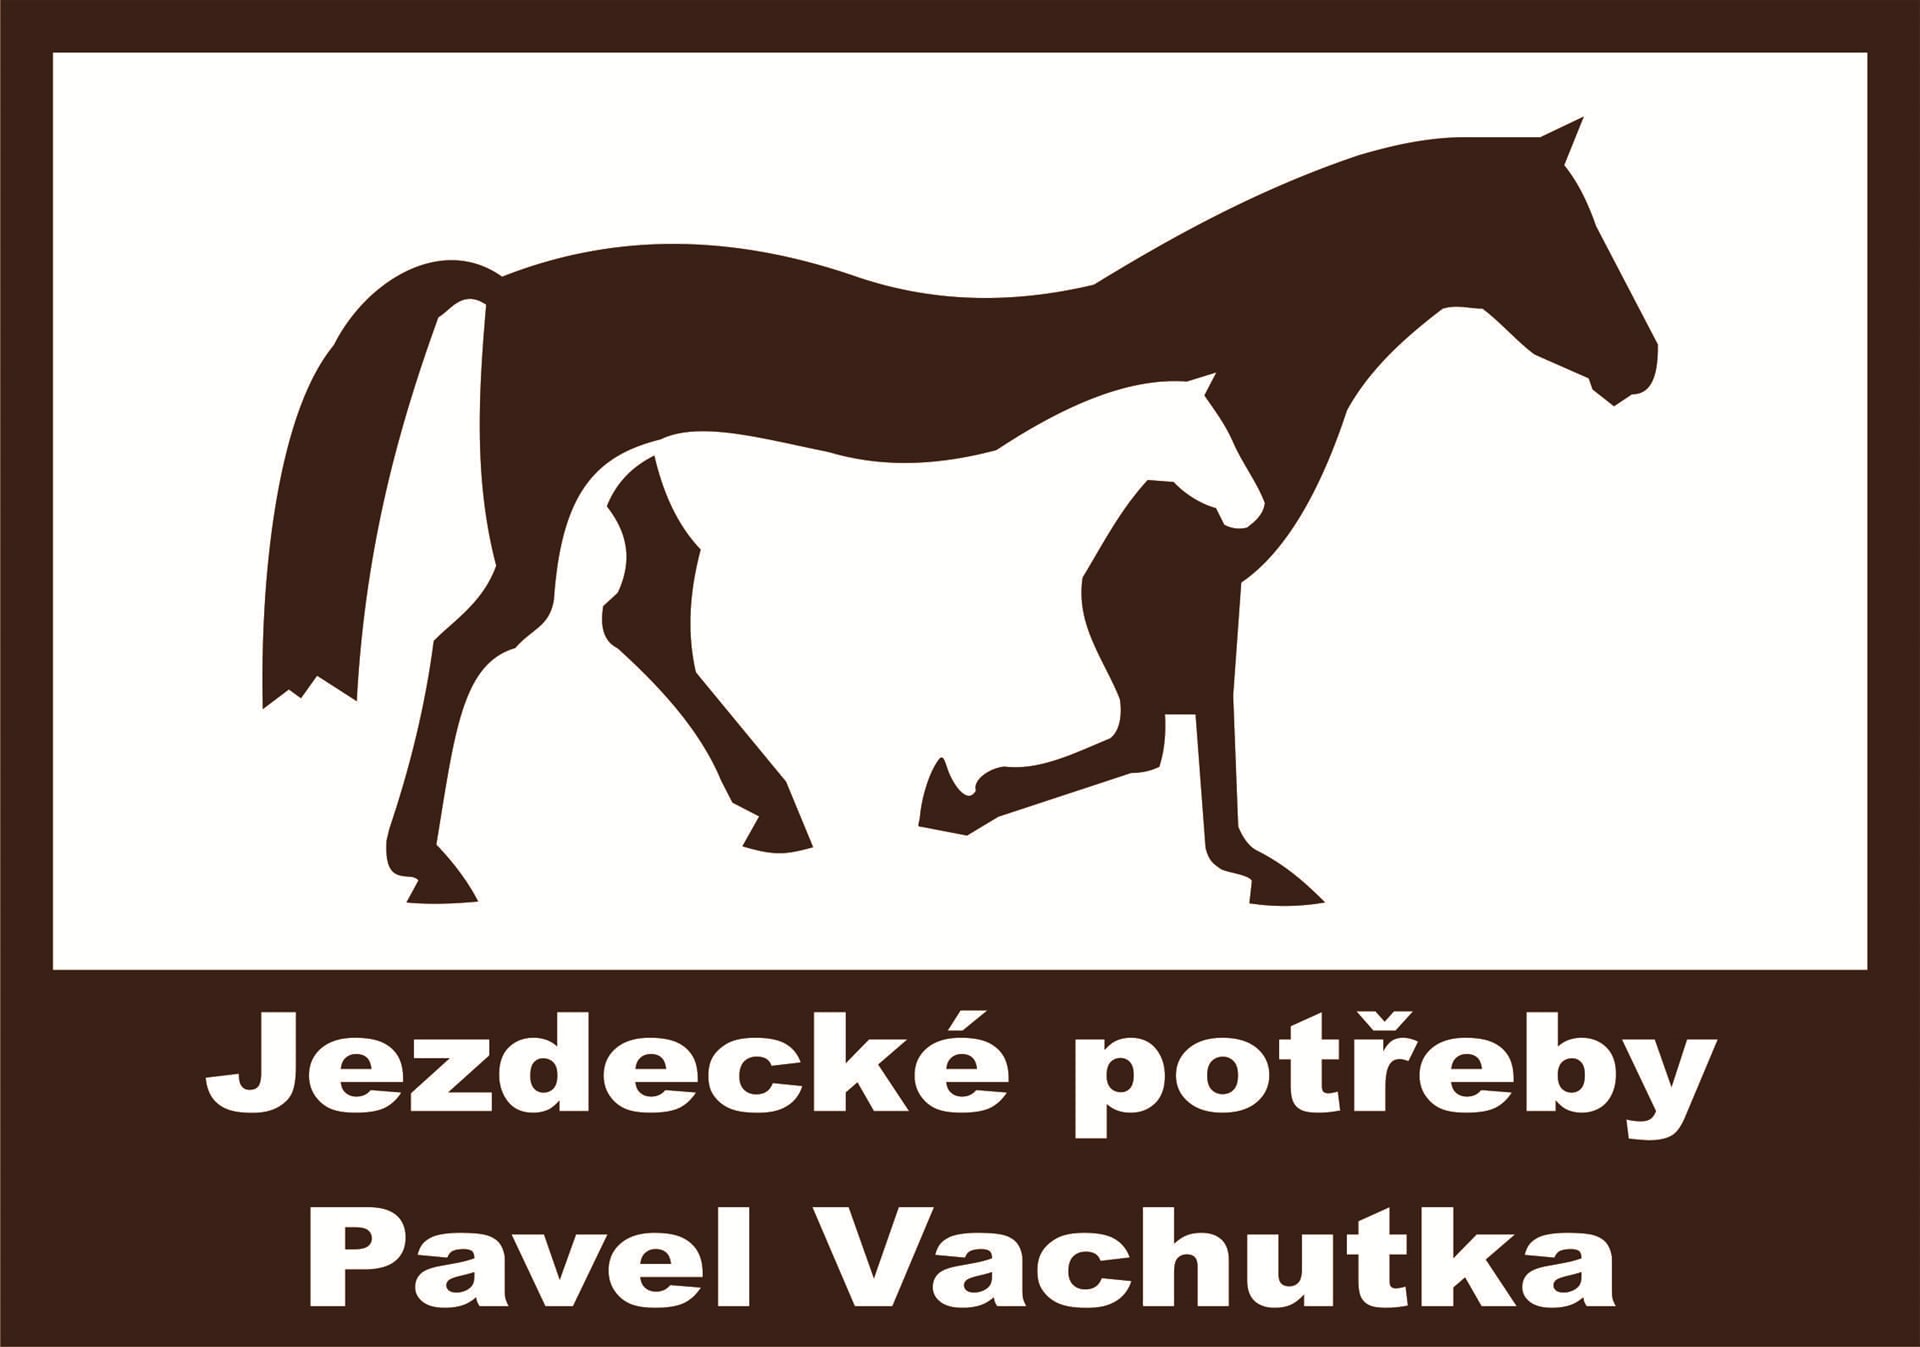 Jezdecké potřeby Pavel Vachutka, Hradiště na písku, Pardubice